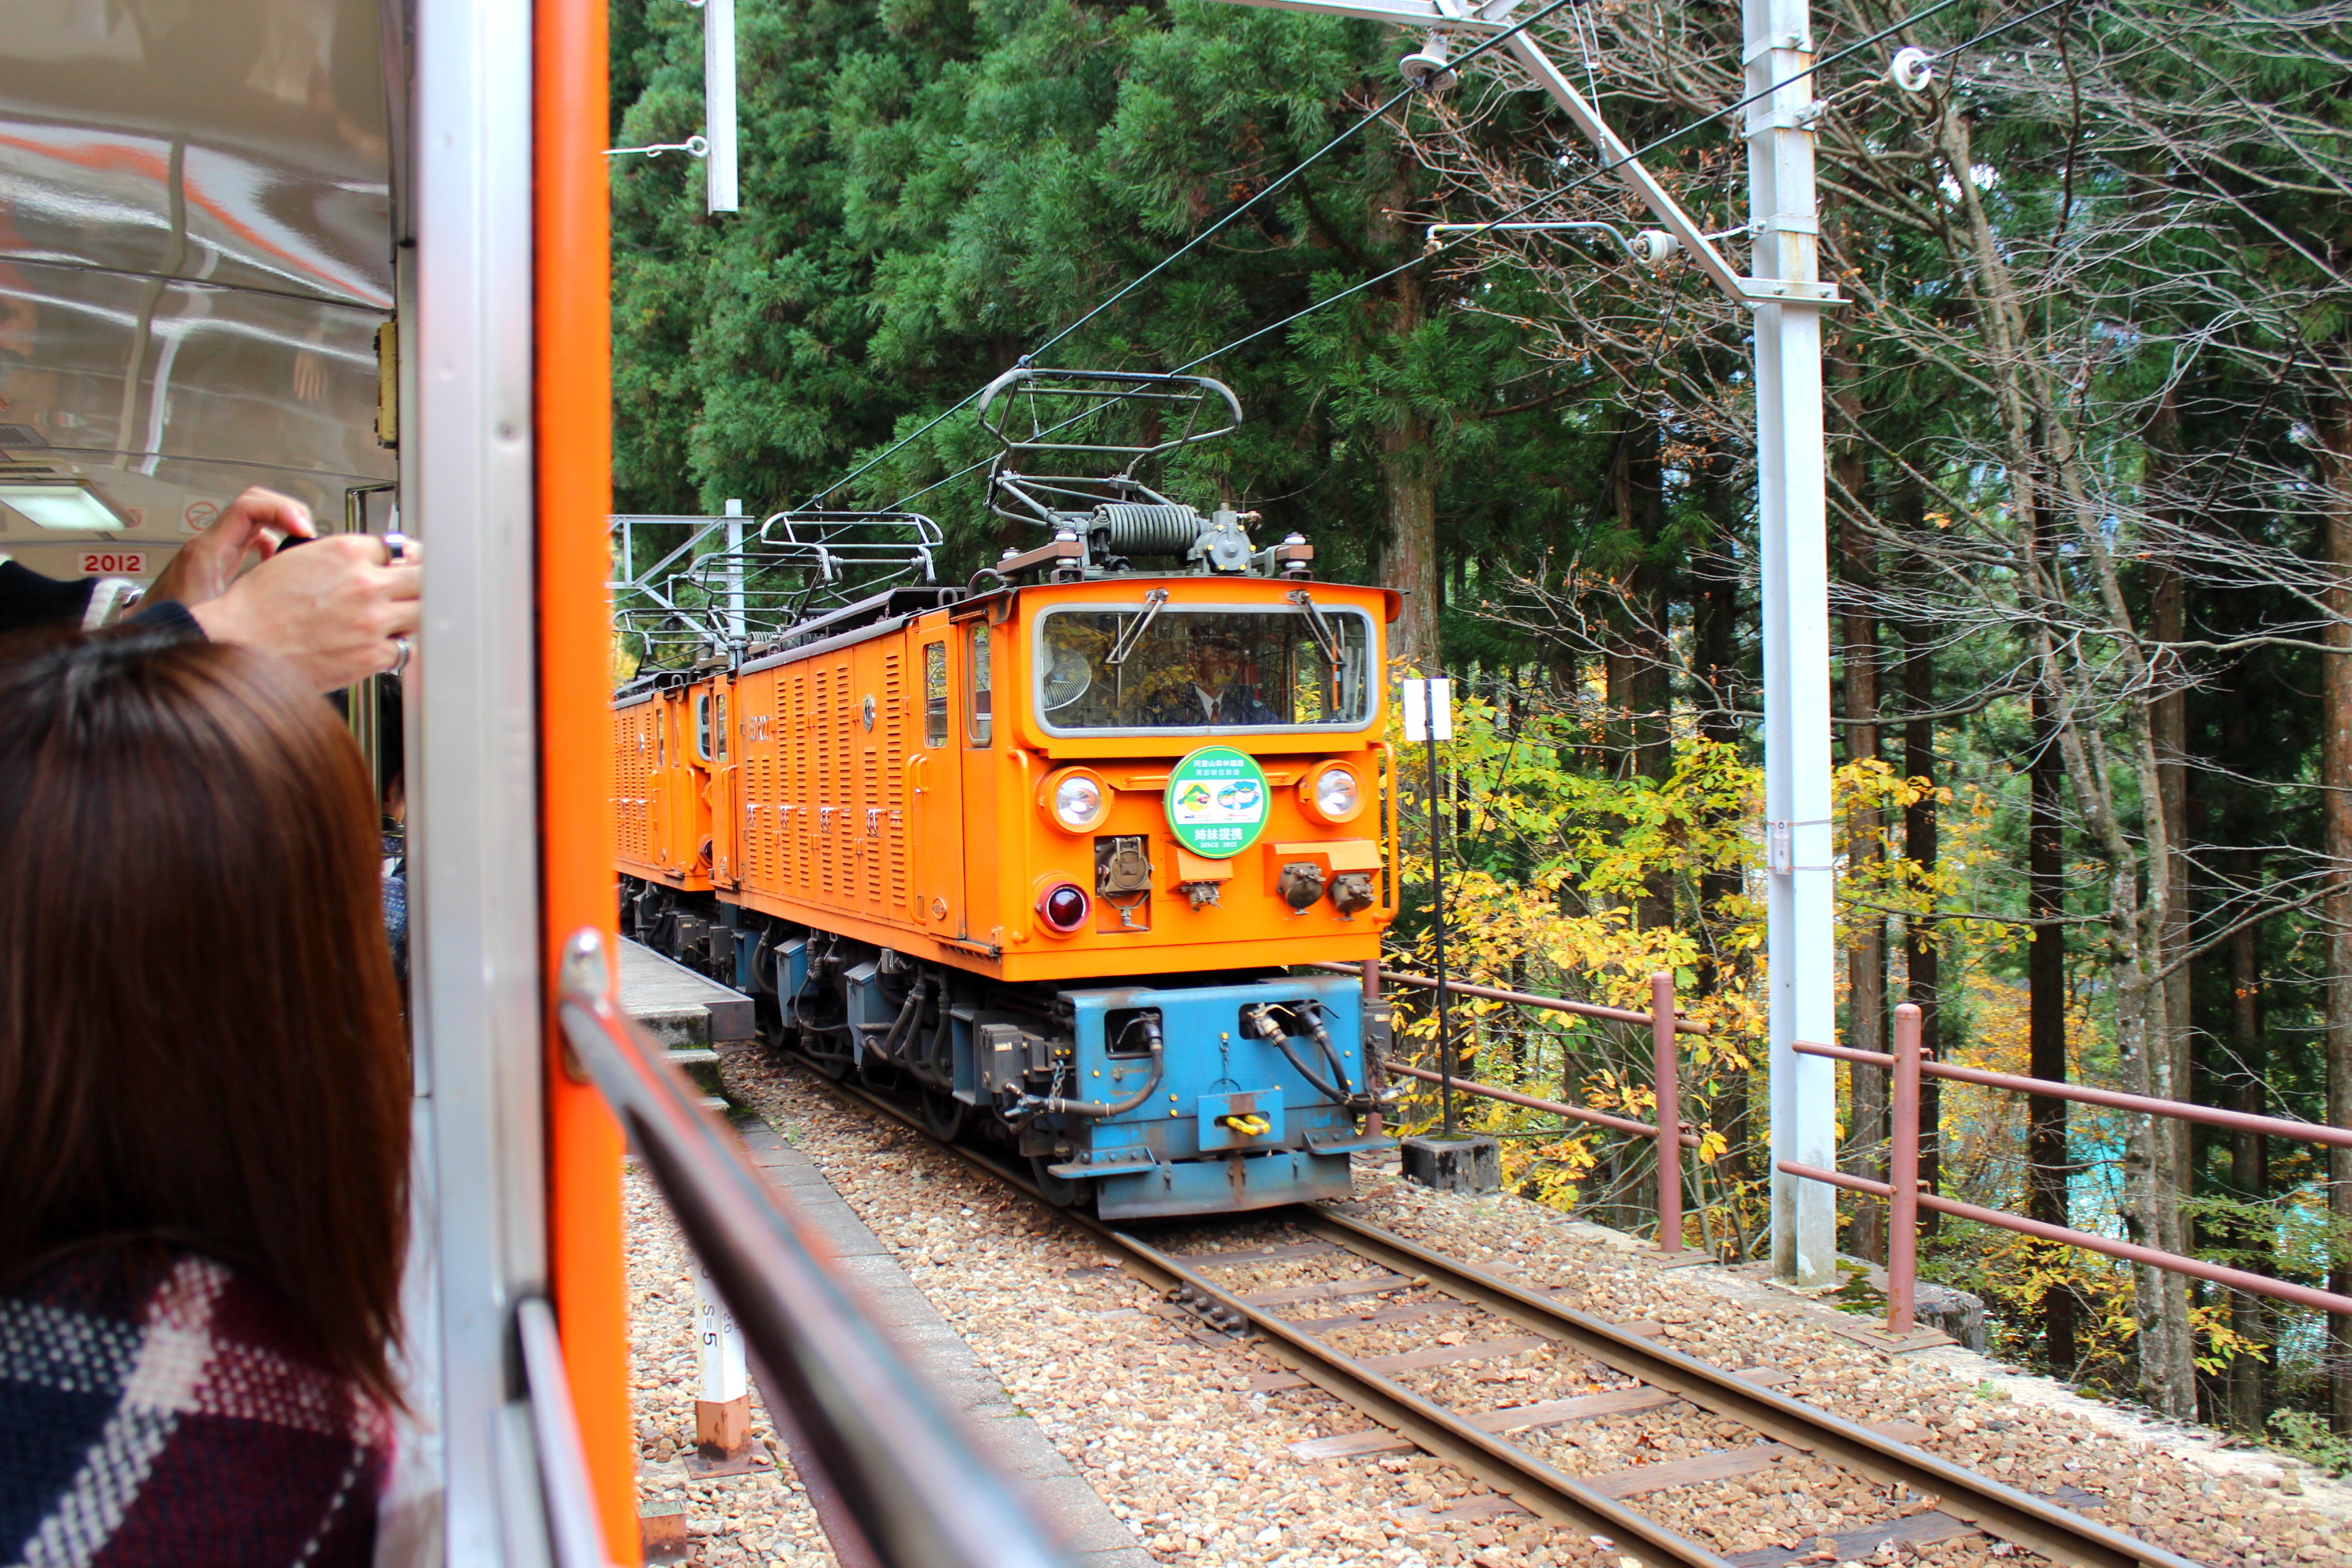 黒部峡谷鉄道21 トロッコ電車で絶景の紅葉を見に行ってきた 富山の遊び場